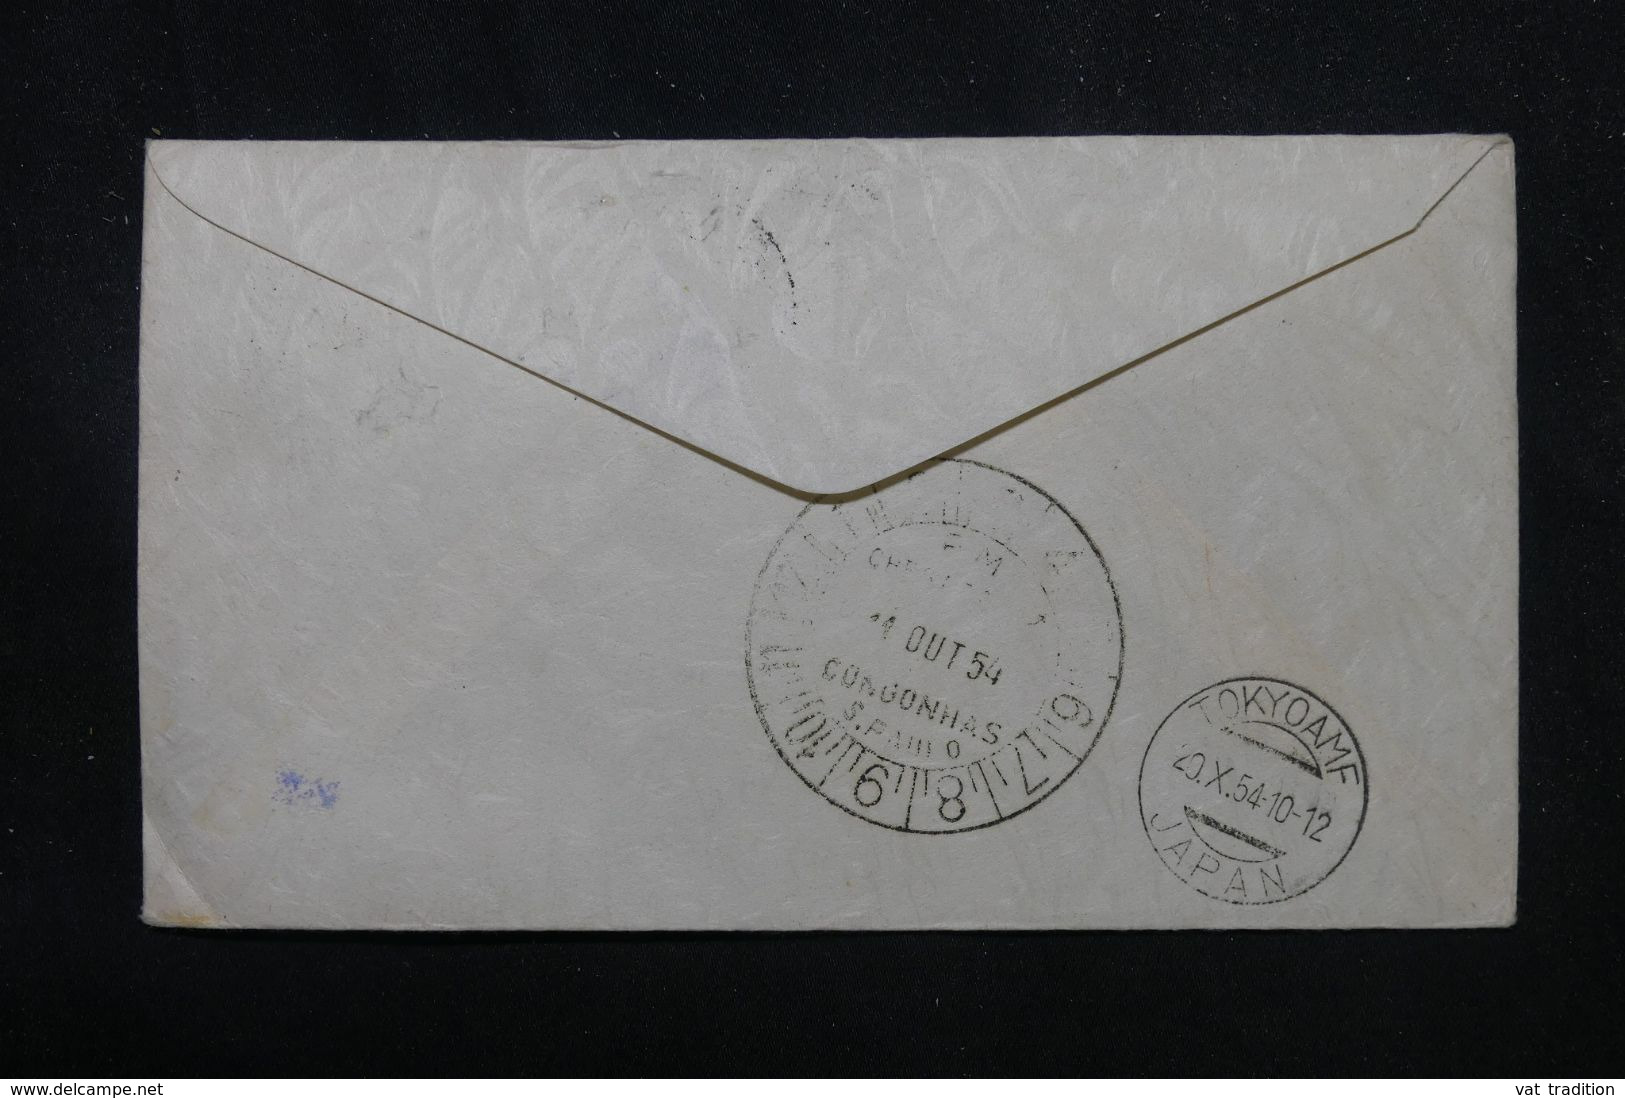 BRÉSIL - Enveloppe Commémorative Du 1er Vol  Sao Paulo / Tokyo En 1954  - L 70427 - Storia Postale